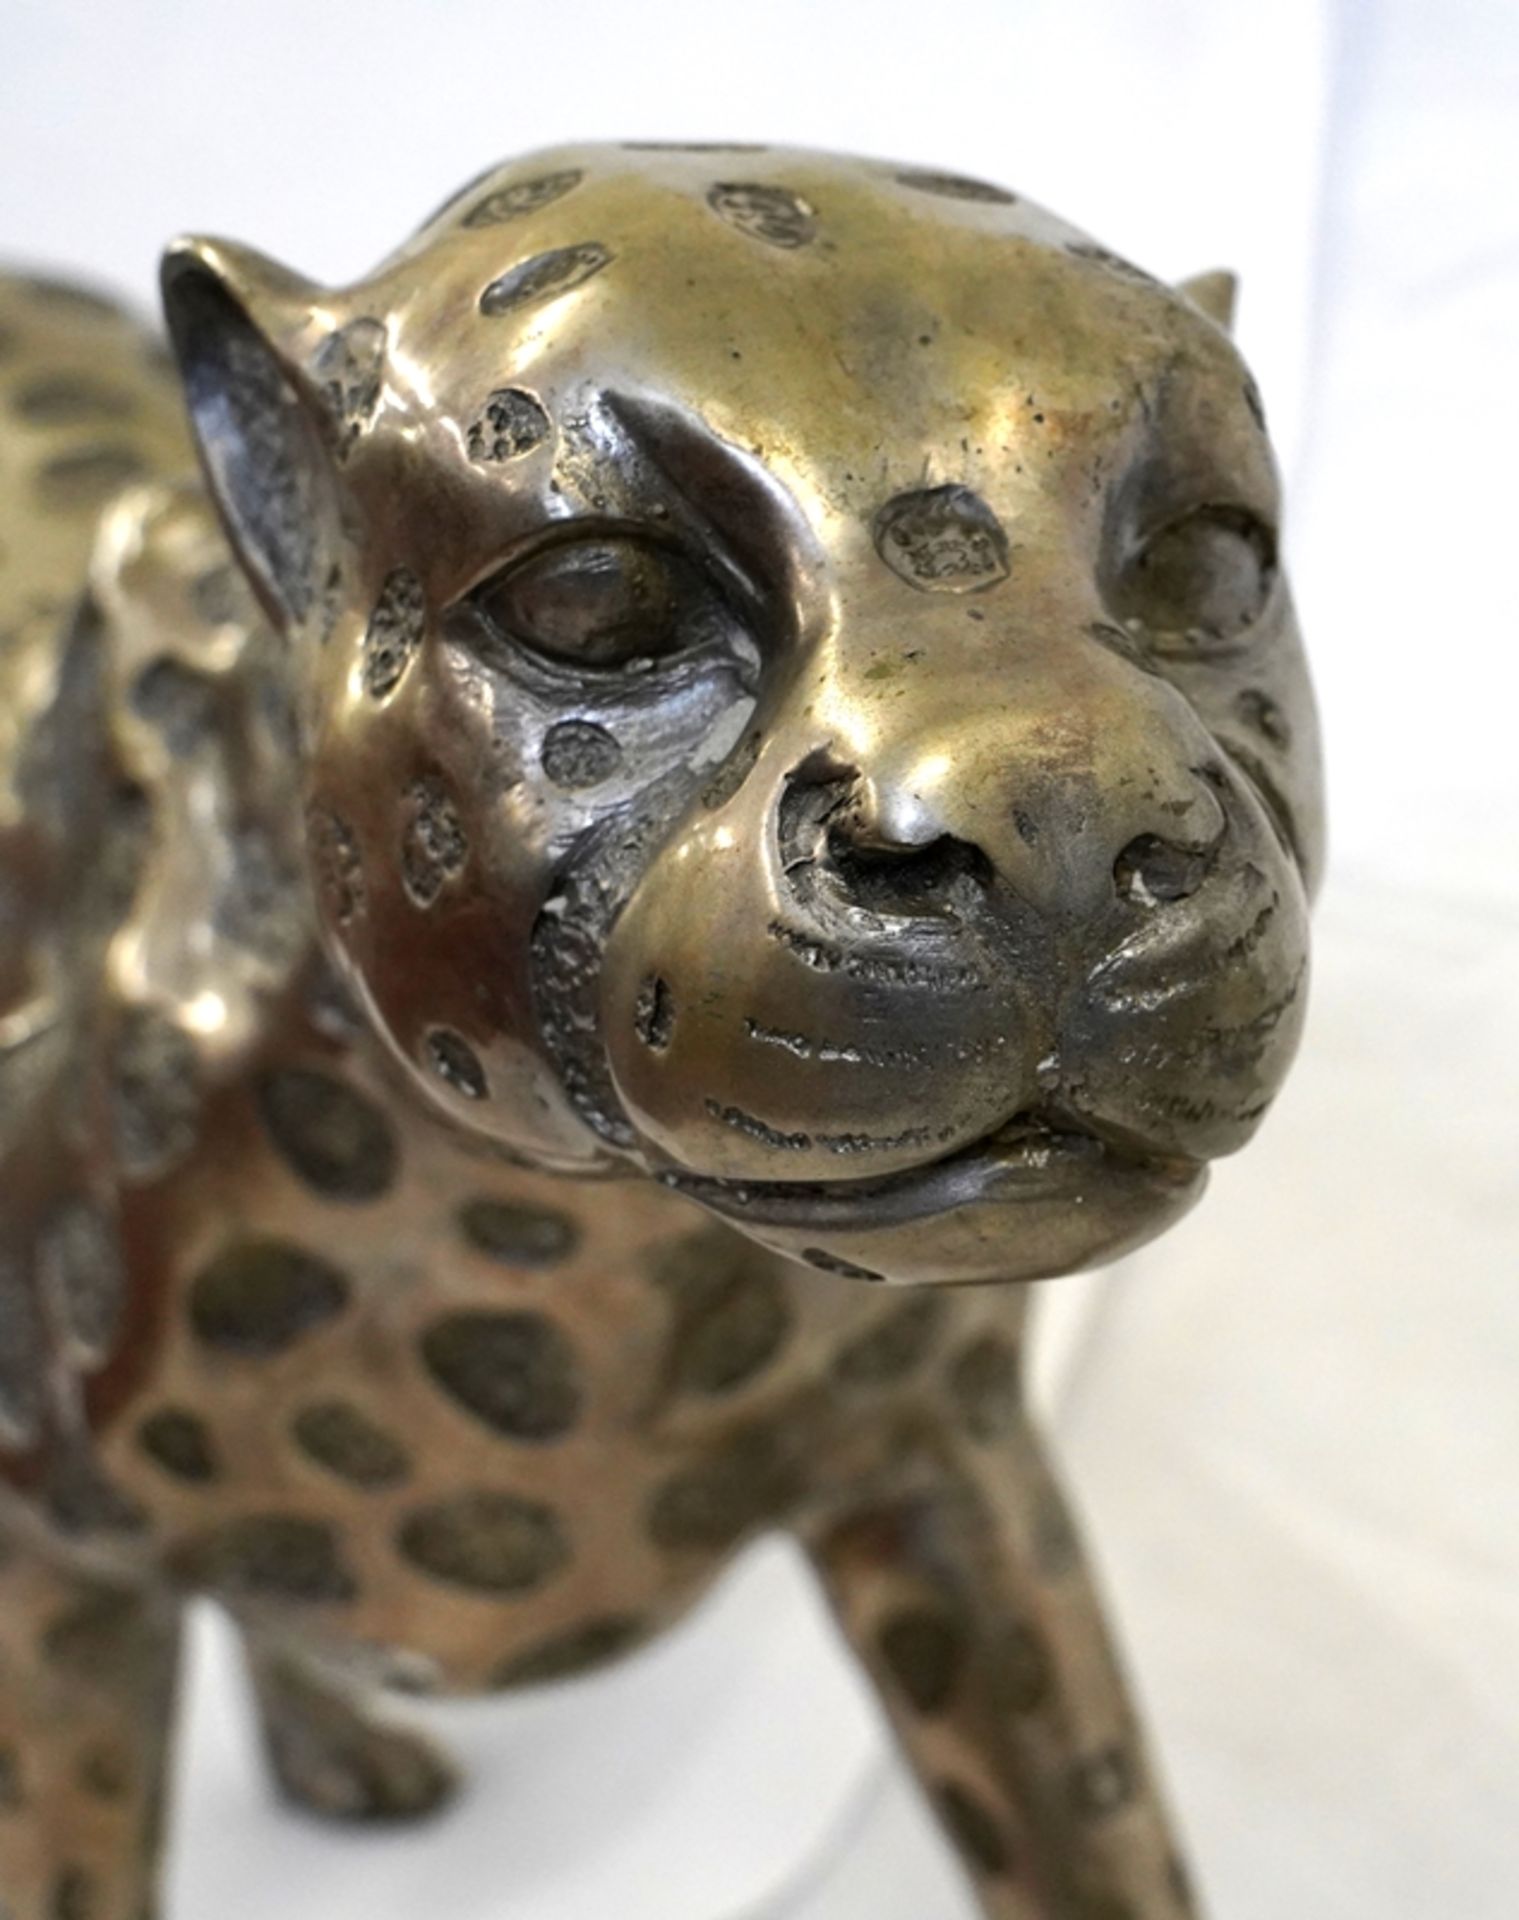 Dekorativer Gepard | Decorative cheetah - Image 5 of 7